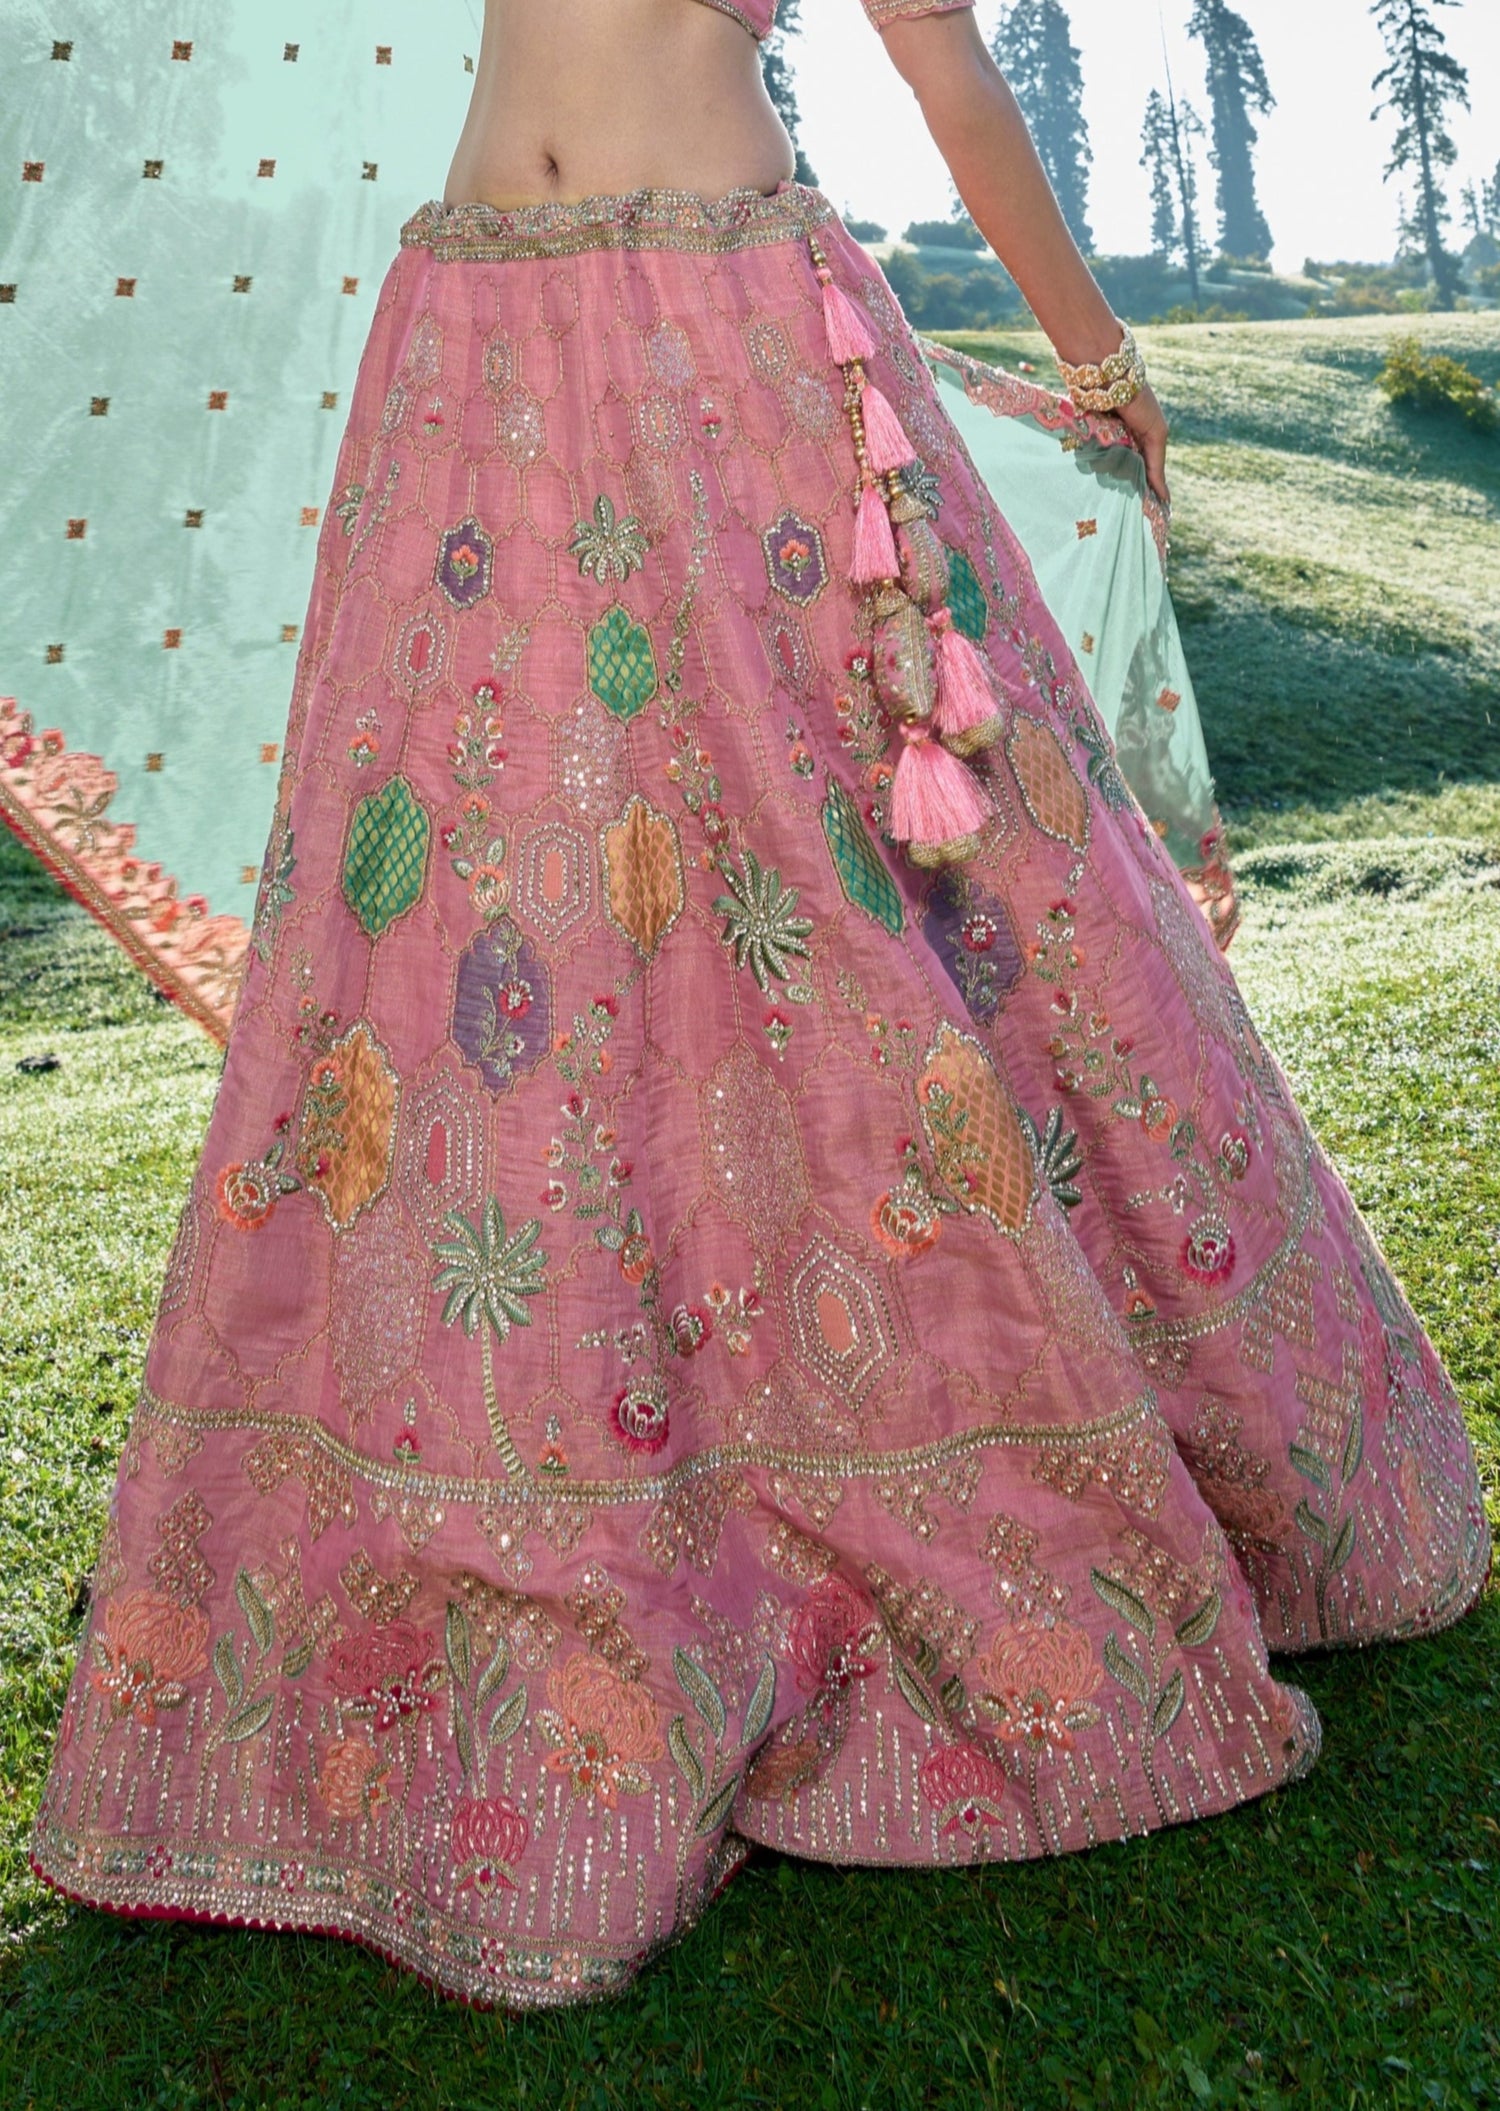 Designer luxury bridal lehenga choli online shopping for bride wedding usa uk sale.